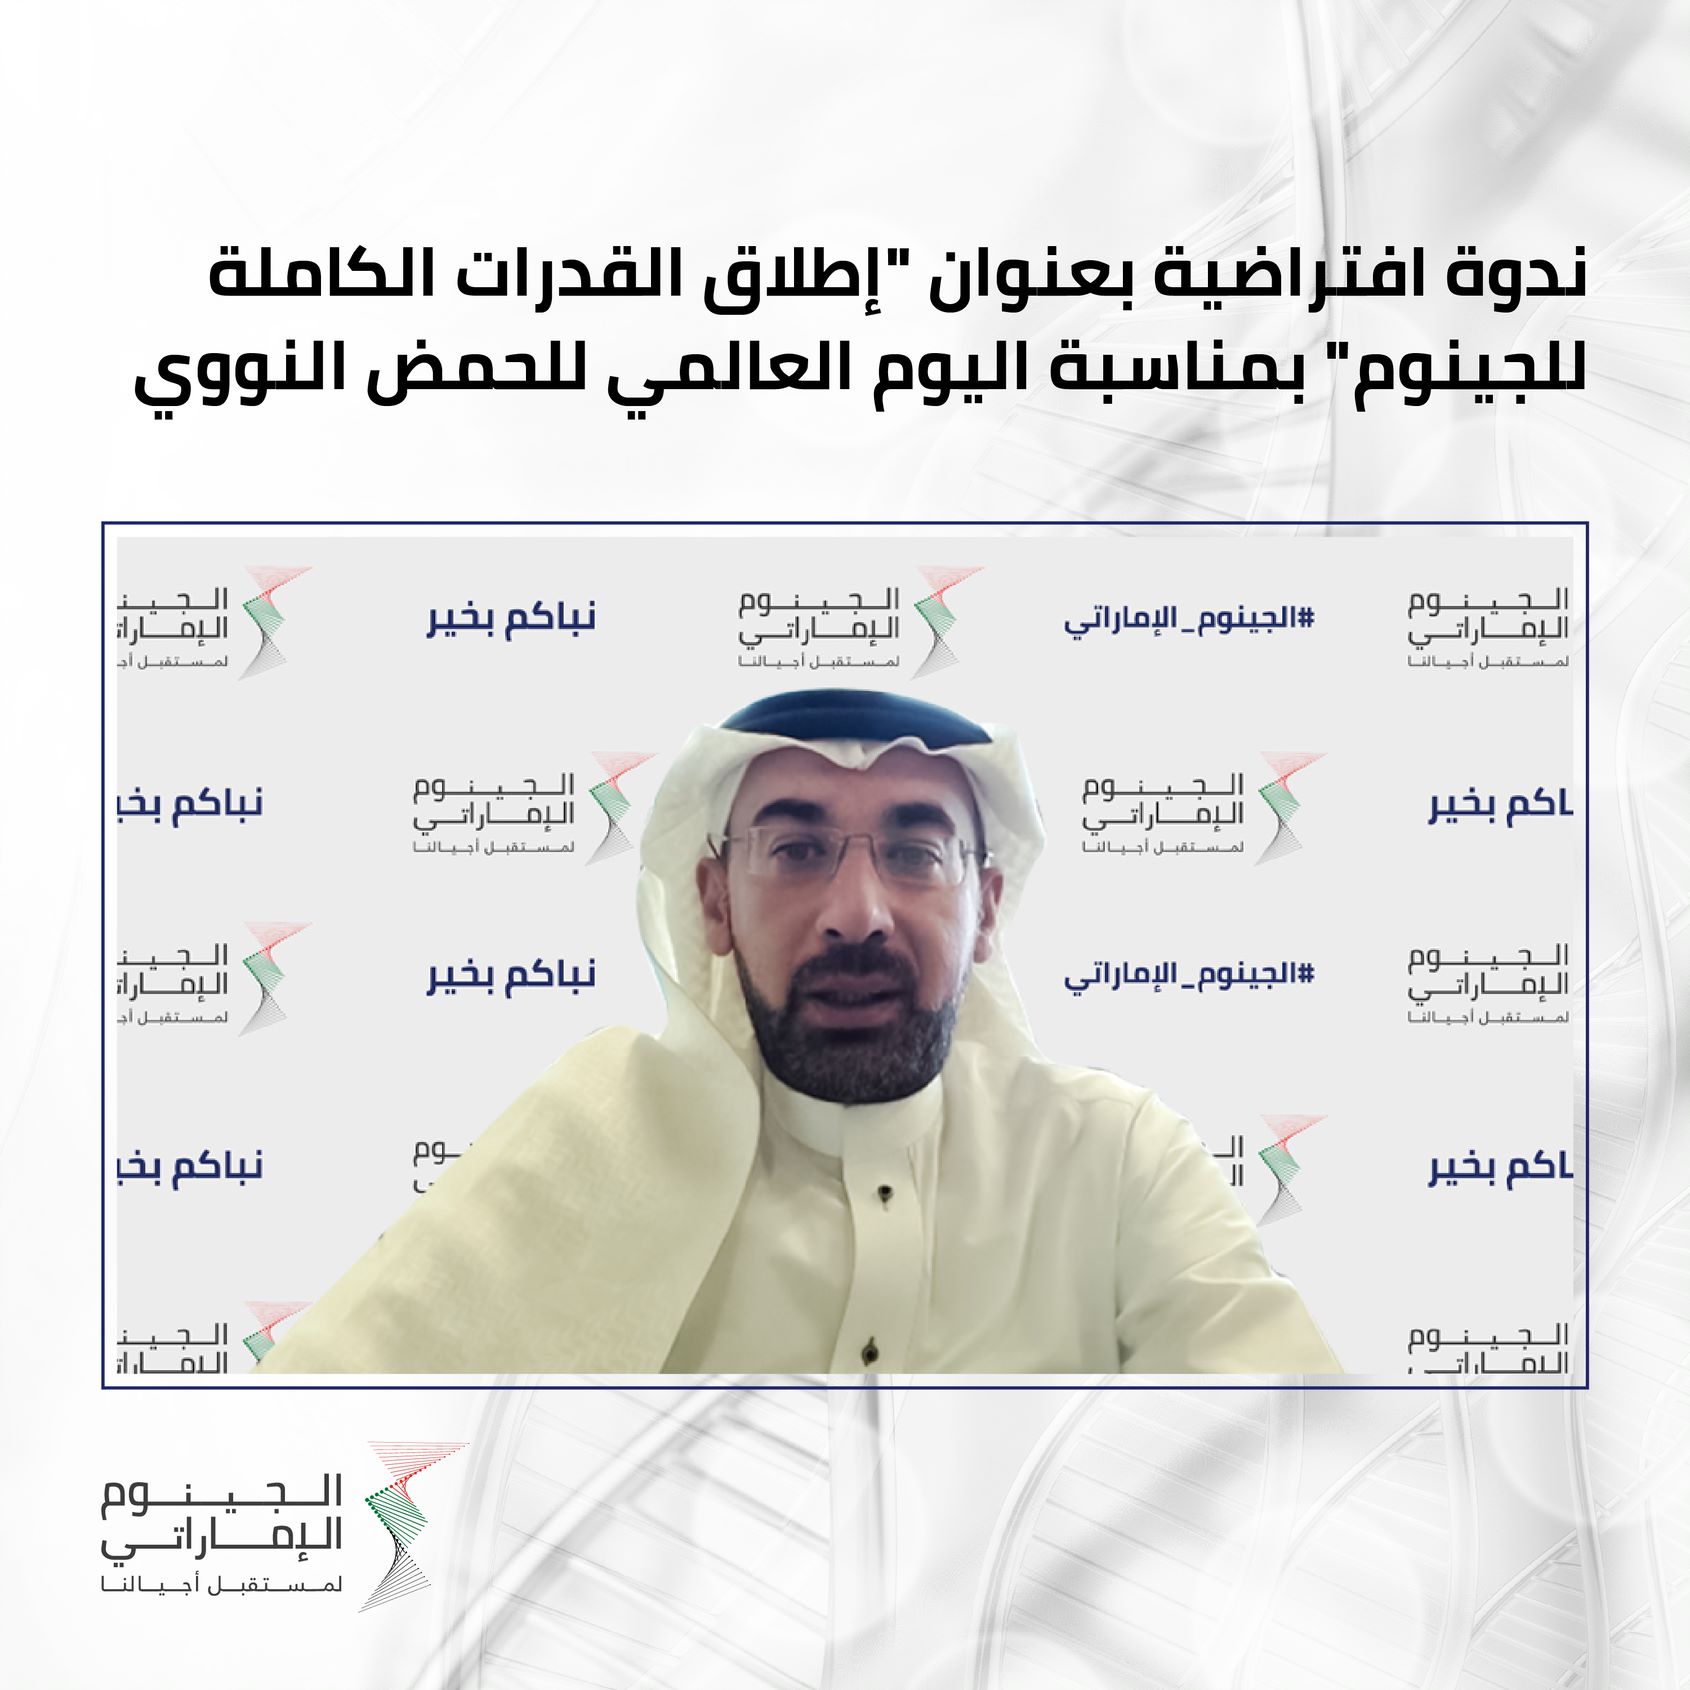 قيادات علمية بارزة في الإمارات يسلطون الضوء حول مستقبل الرعاية الصحية